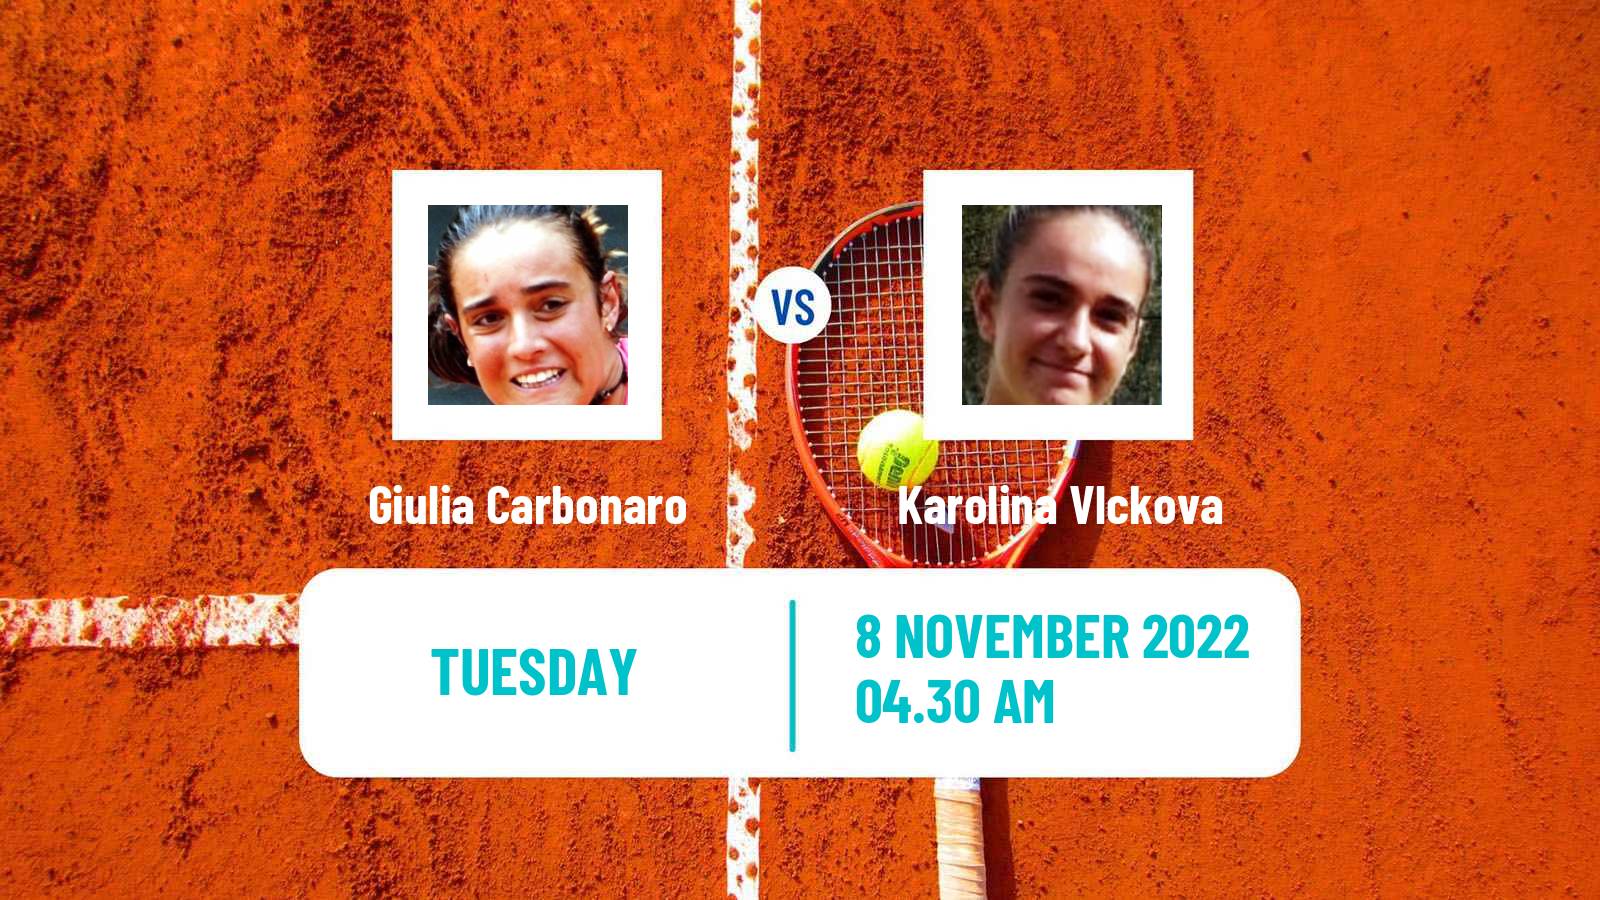 Tennis ITF Tournaments Giulia Carbonaro - Karolina Vlckova